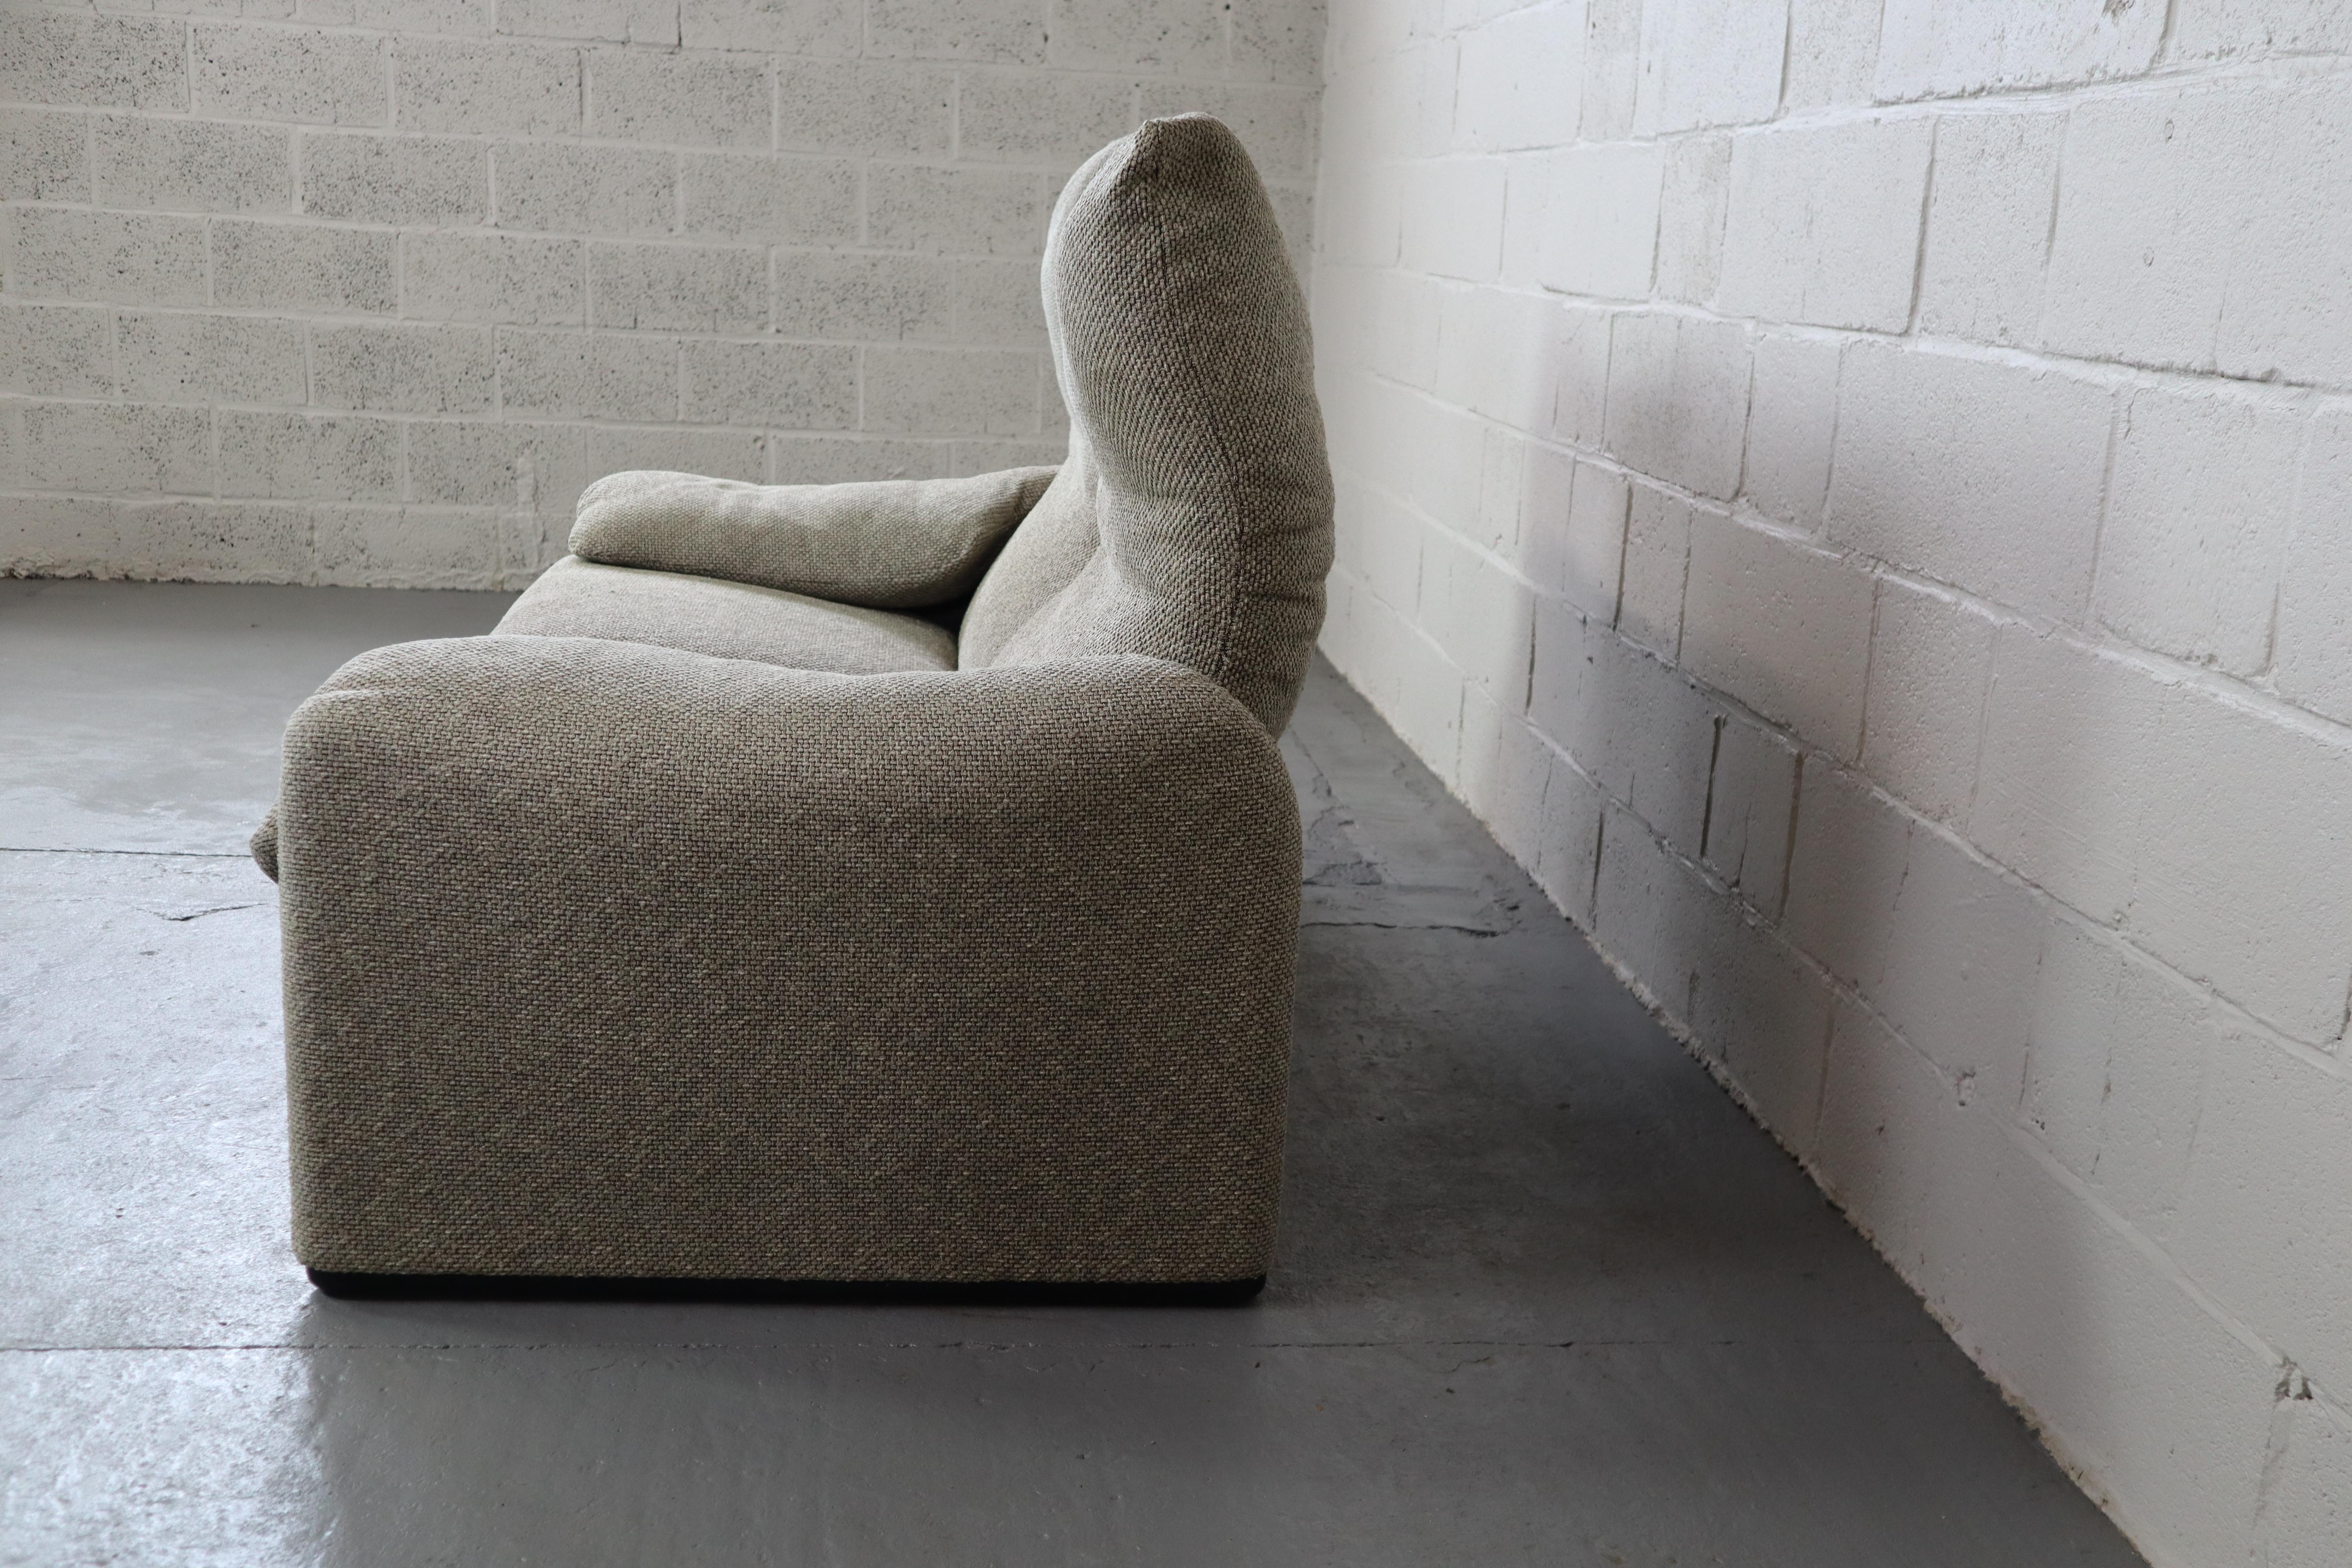 Fabric Maralunga sofa set  by Vico Magistretti for Cassina